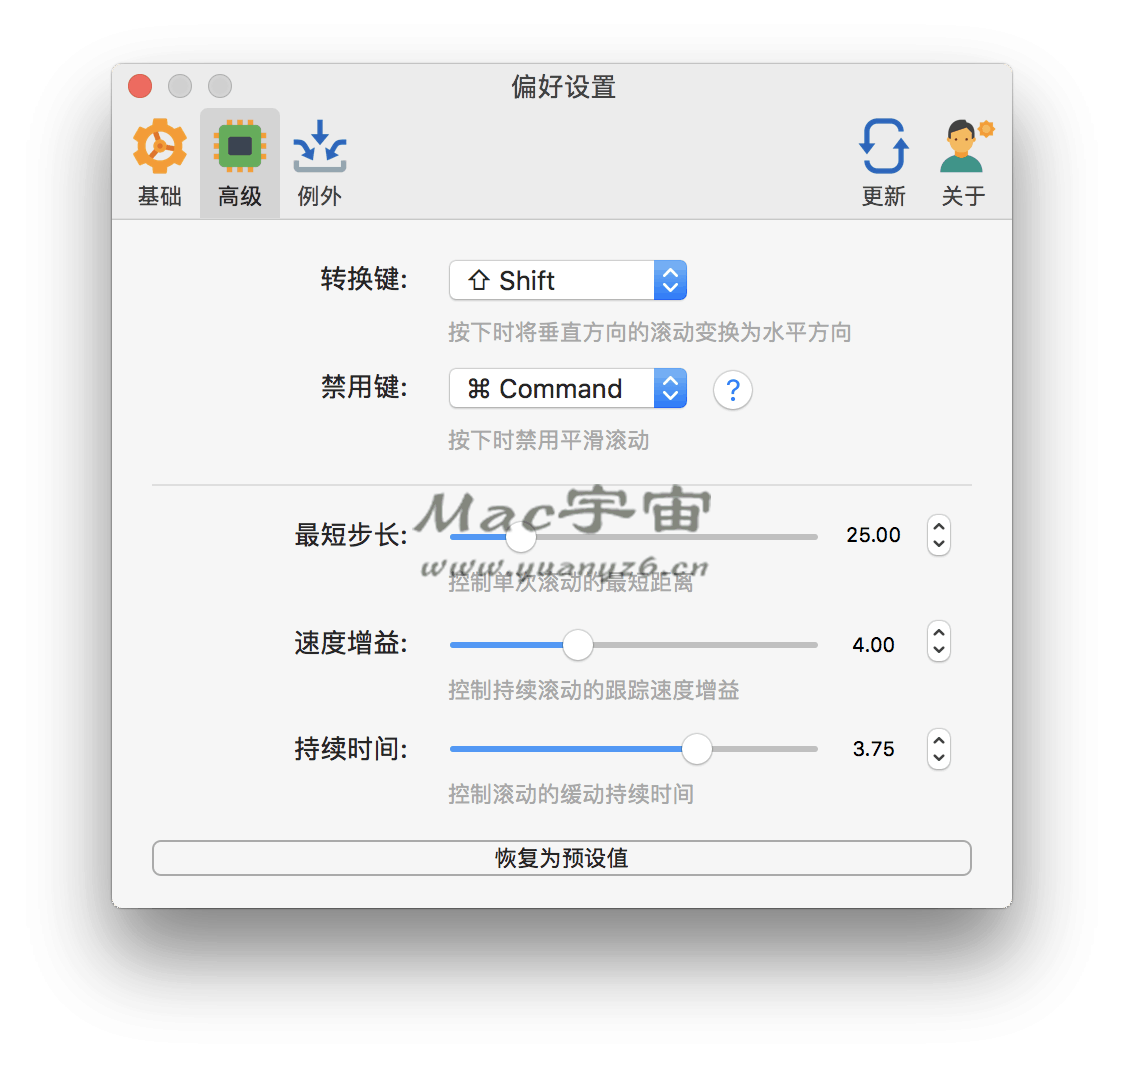 Mos for Mac v3.3.2 中文版 让鼠标平滑滚动 苹果电脑